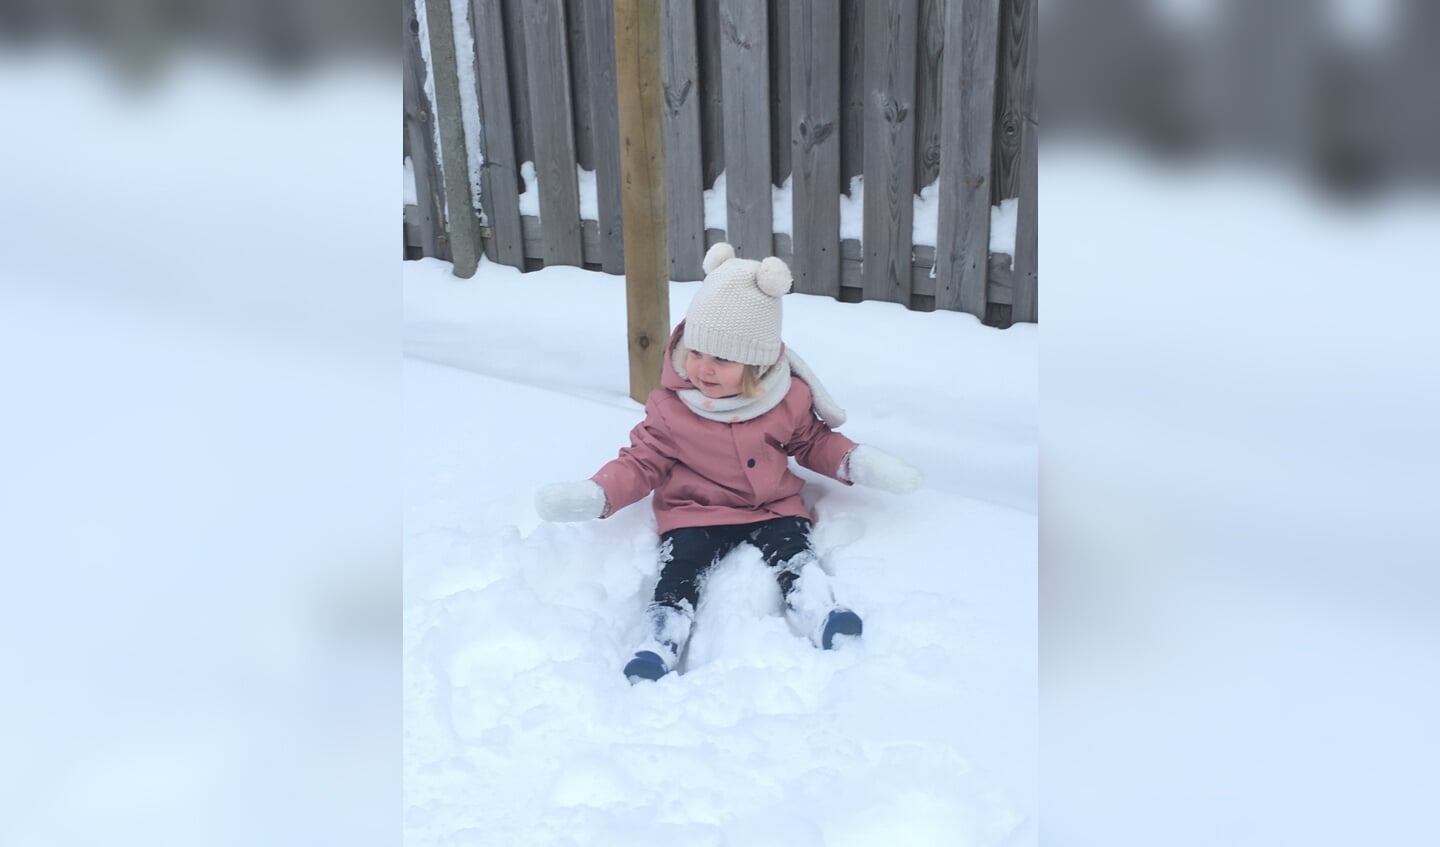 Hierbij een winter-/sneeuwfoto van onze kleindochter; zomaar neergeploft in de sneeuw.